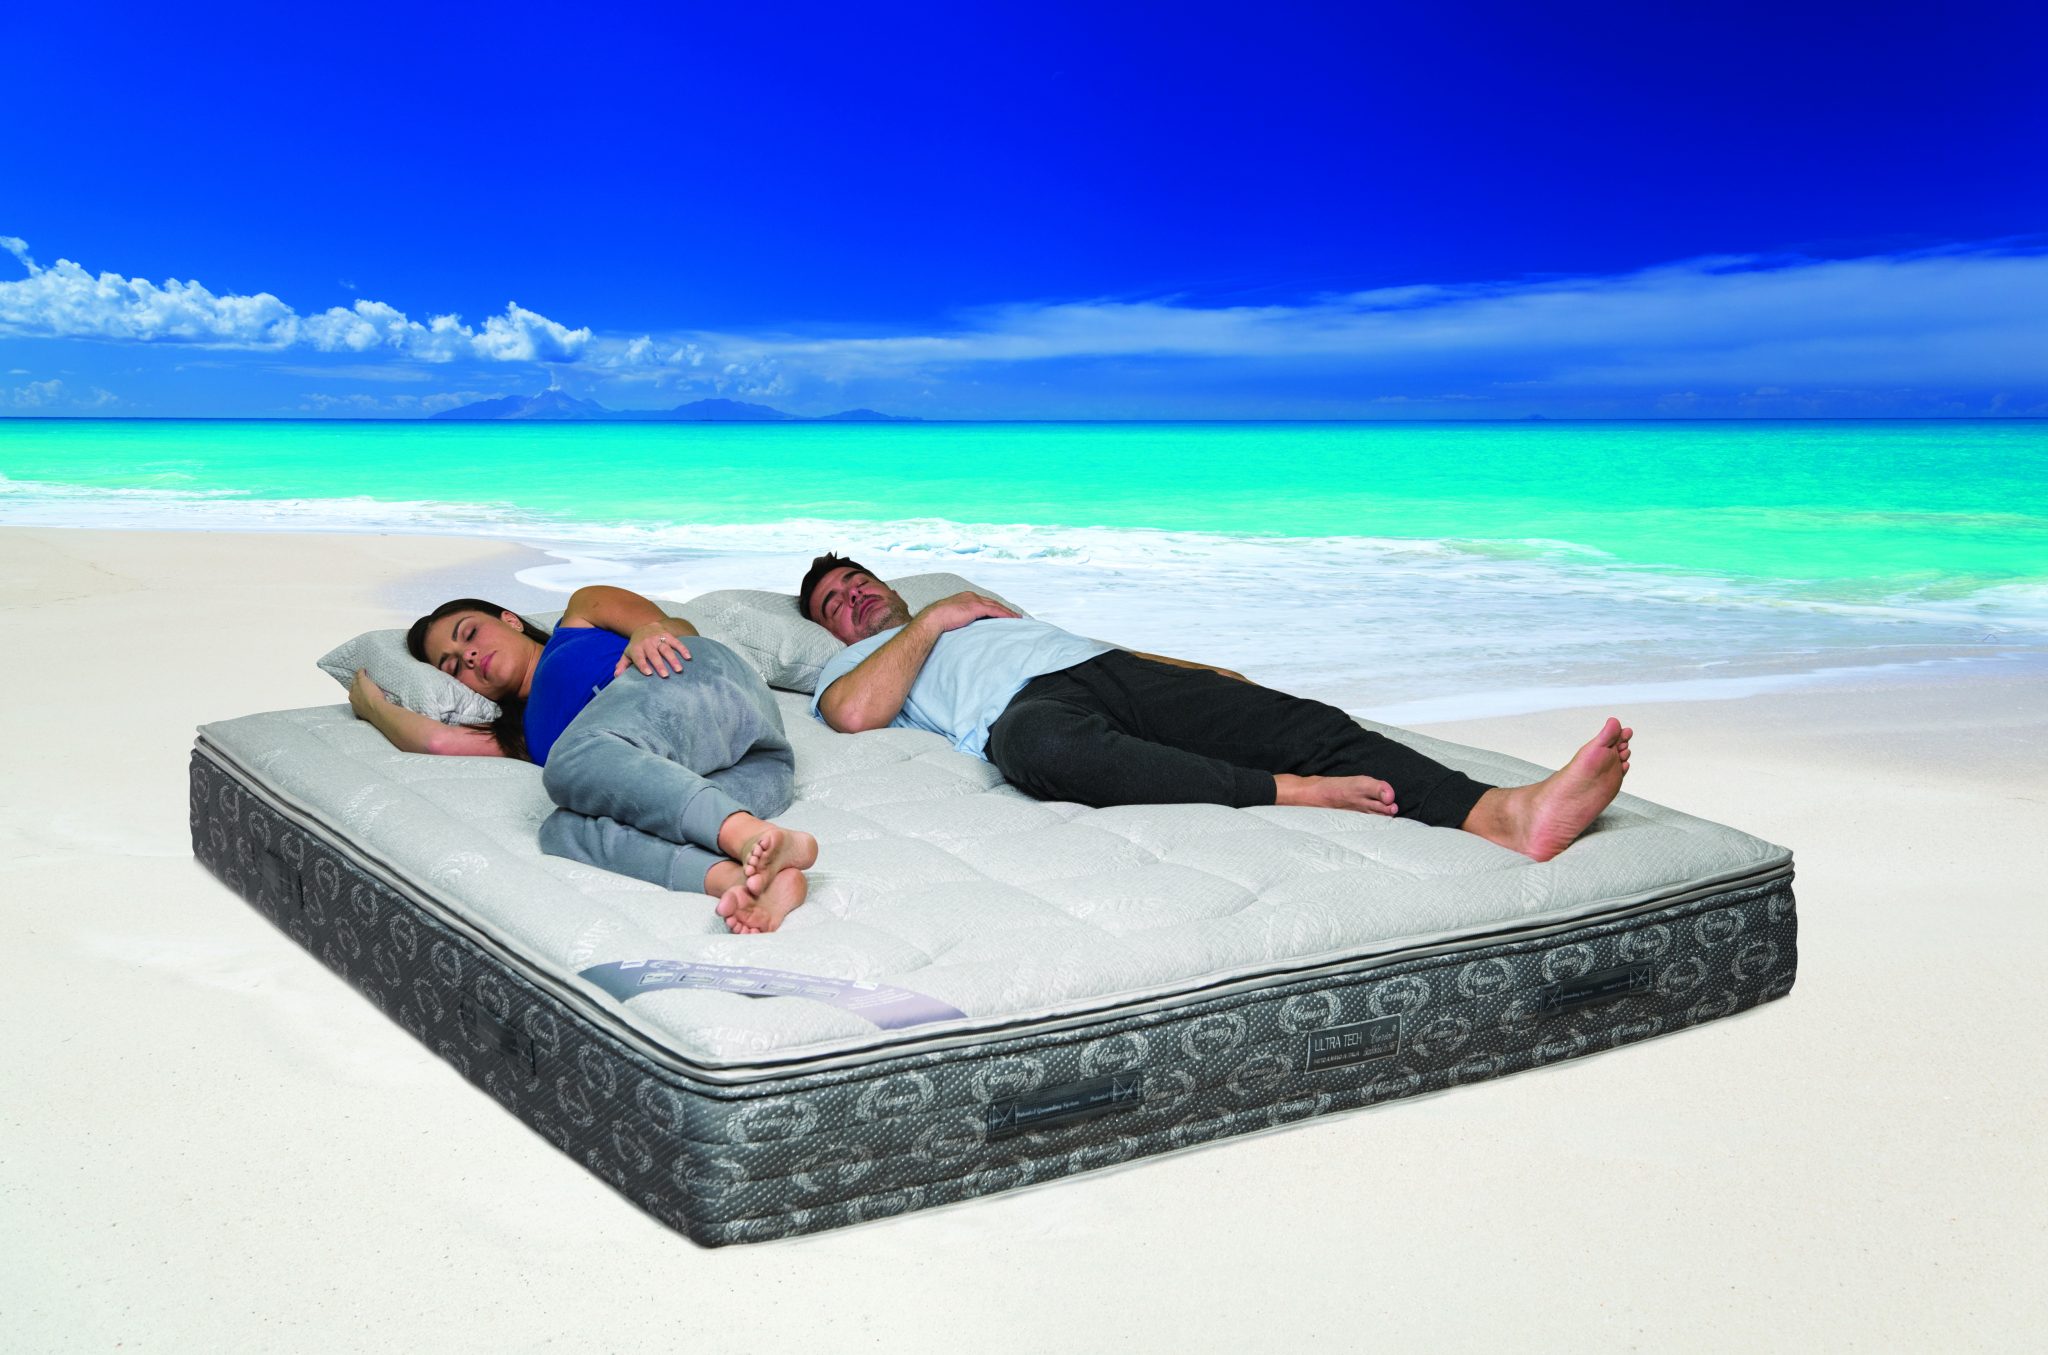 Carico Sleep System, Like Sleeping on the Beach